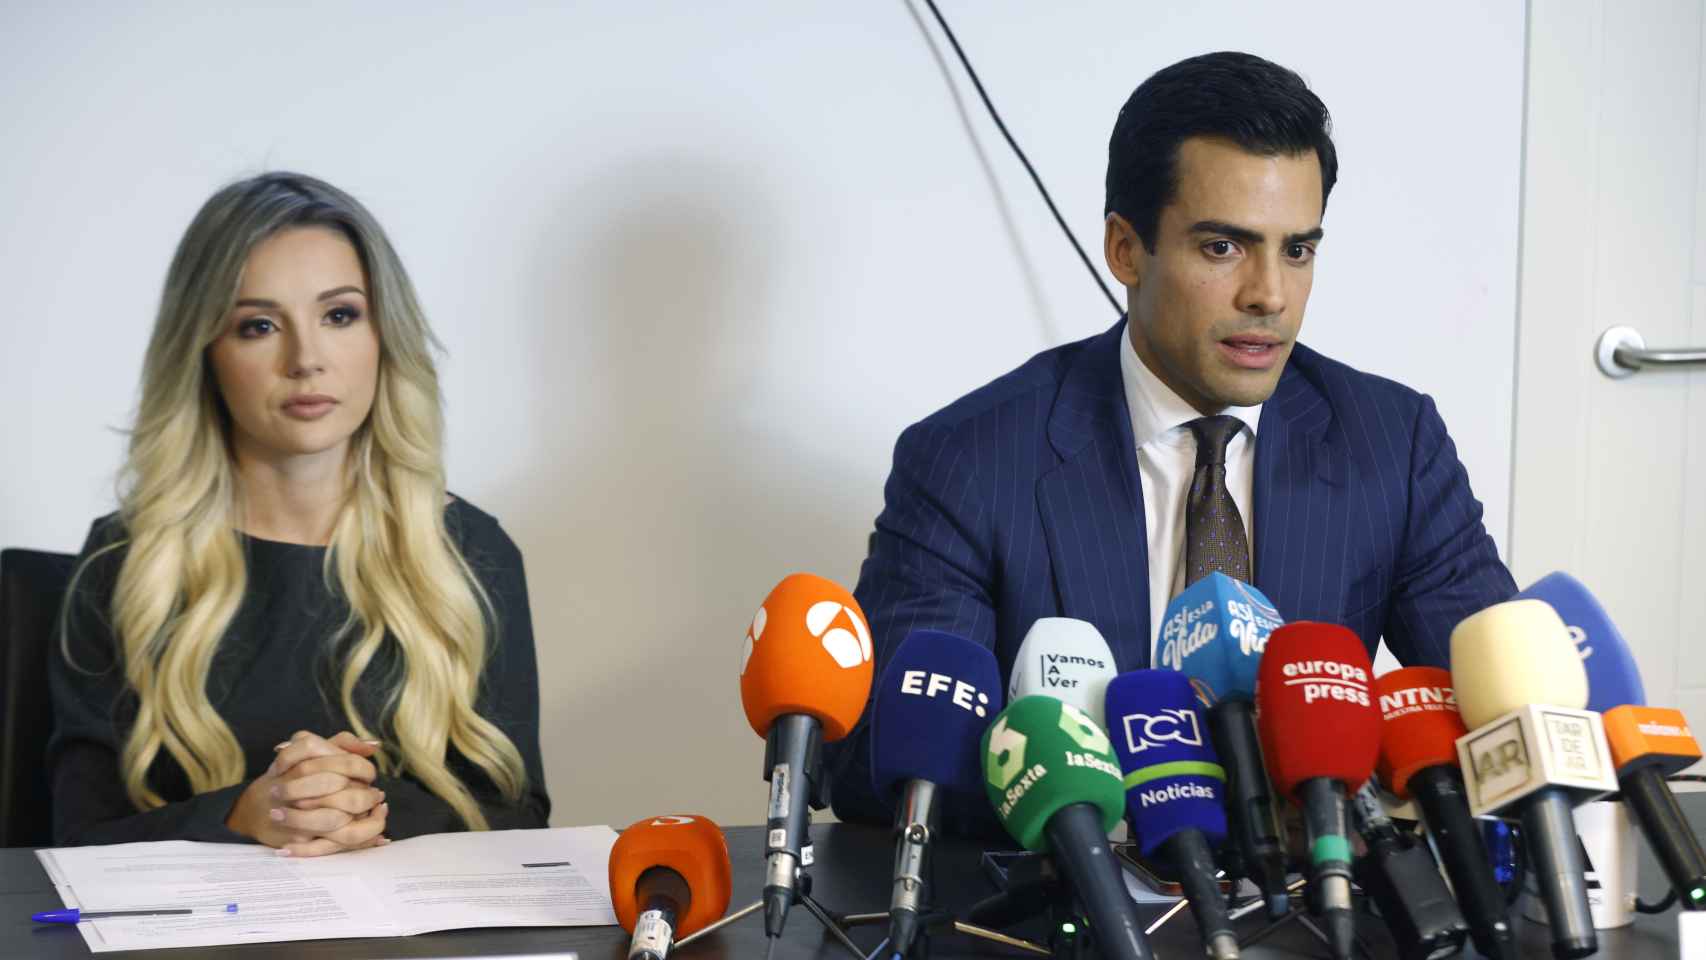 El despacho de abogados Ospina Abogados en la rueda de prensa.